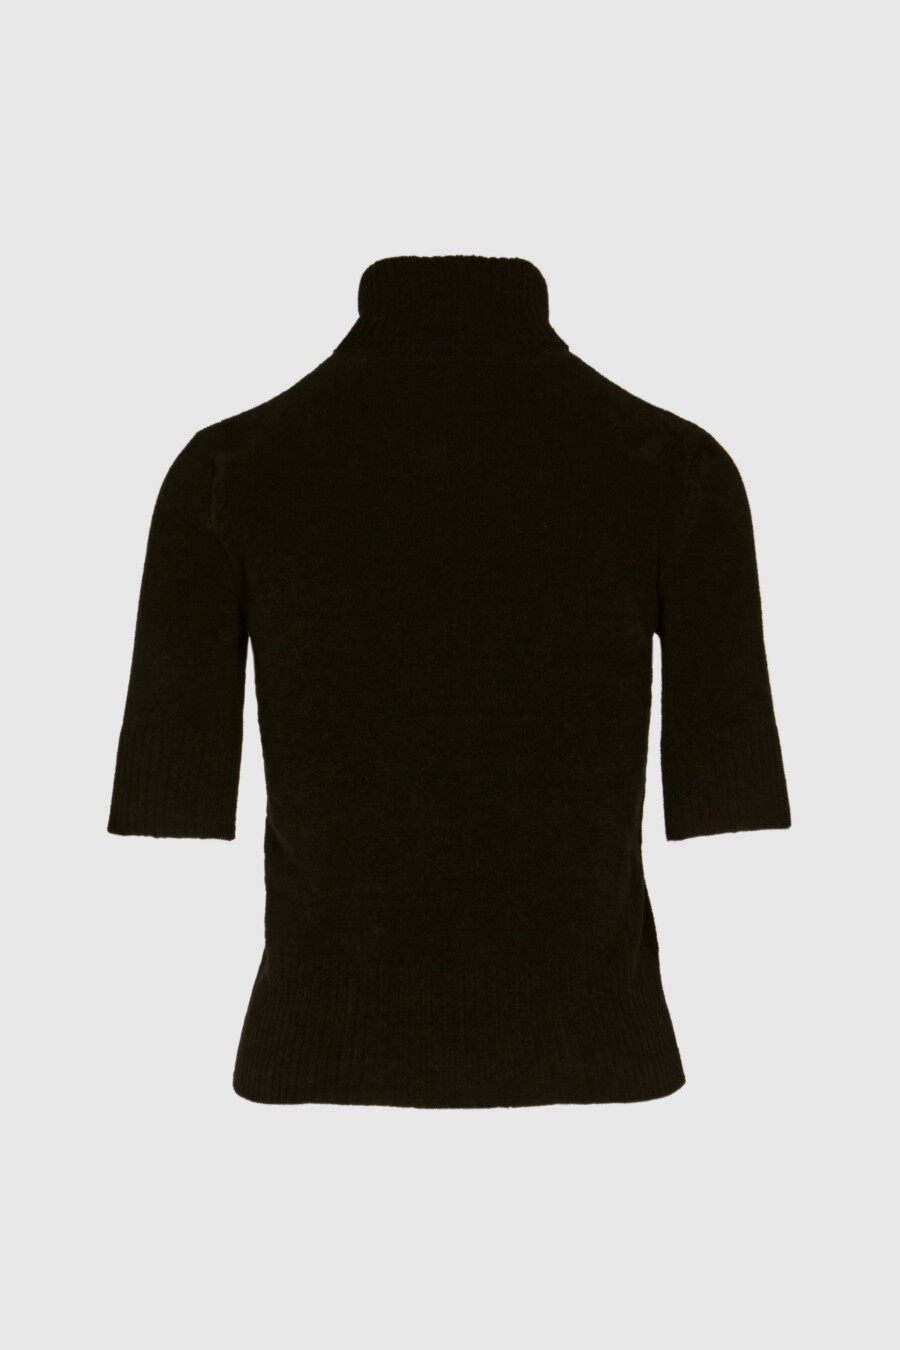 Pullover in kräftigem Schwarz, femininem Rollkragen, figurbetonter Passform, schmalem Arm bis zum Ellenbogen